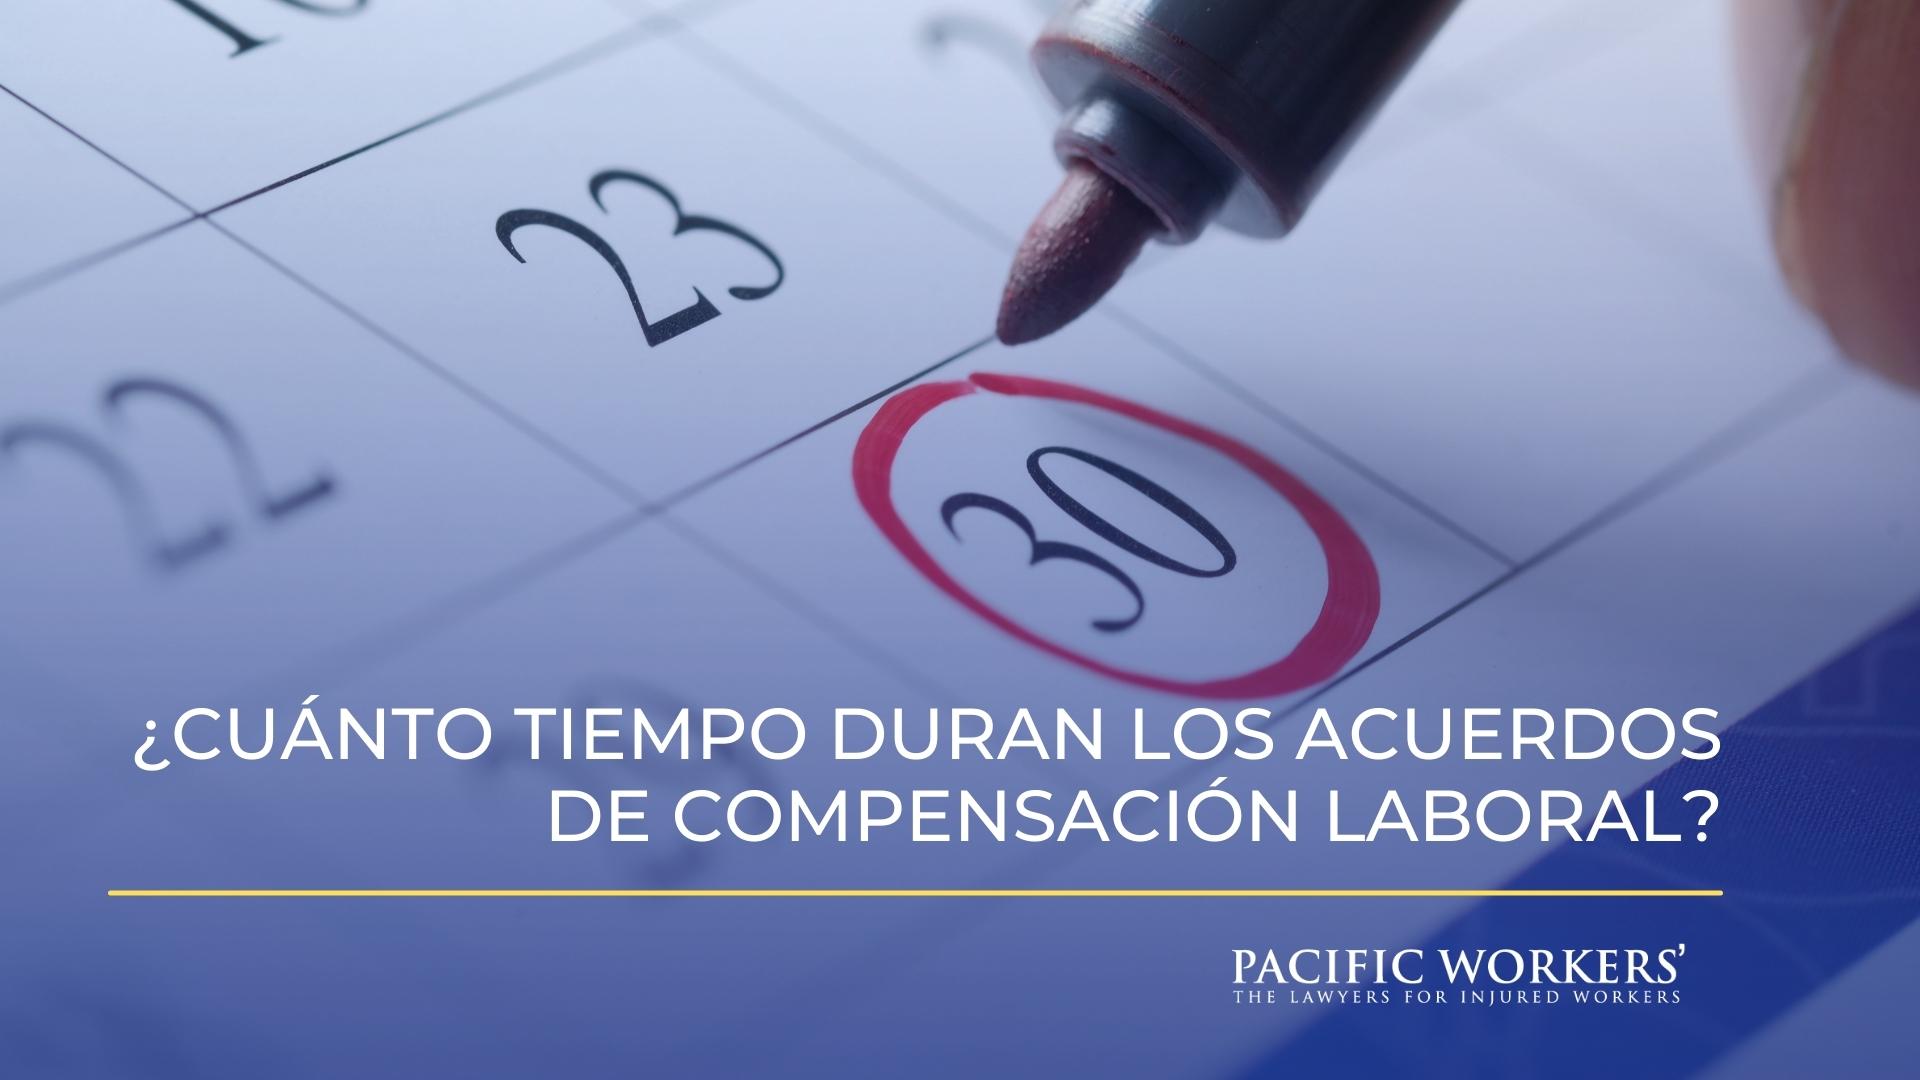 ¿Cuánto tiempo duran los acuerdos de compensación laboral?